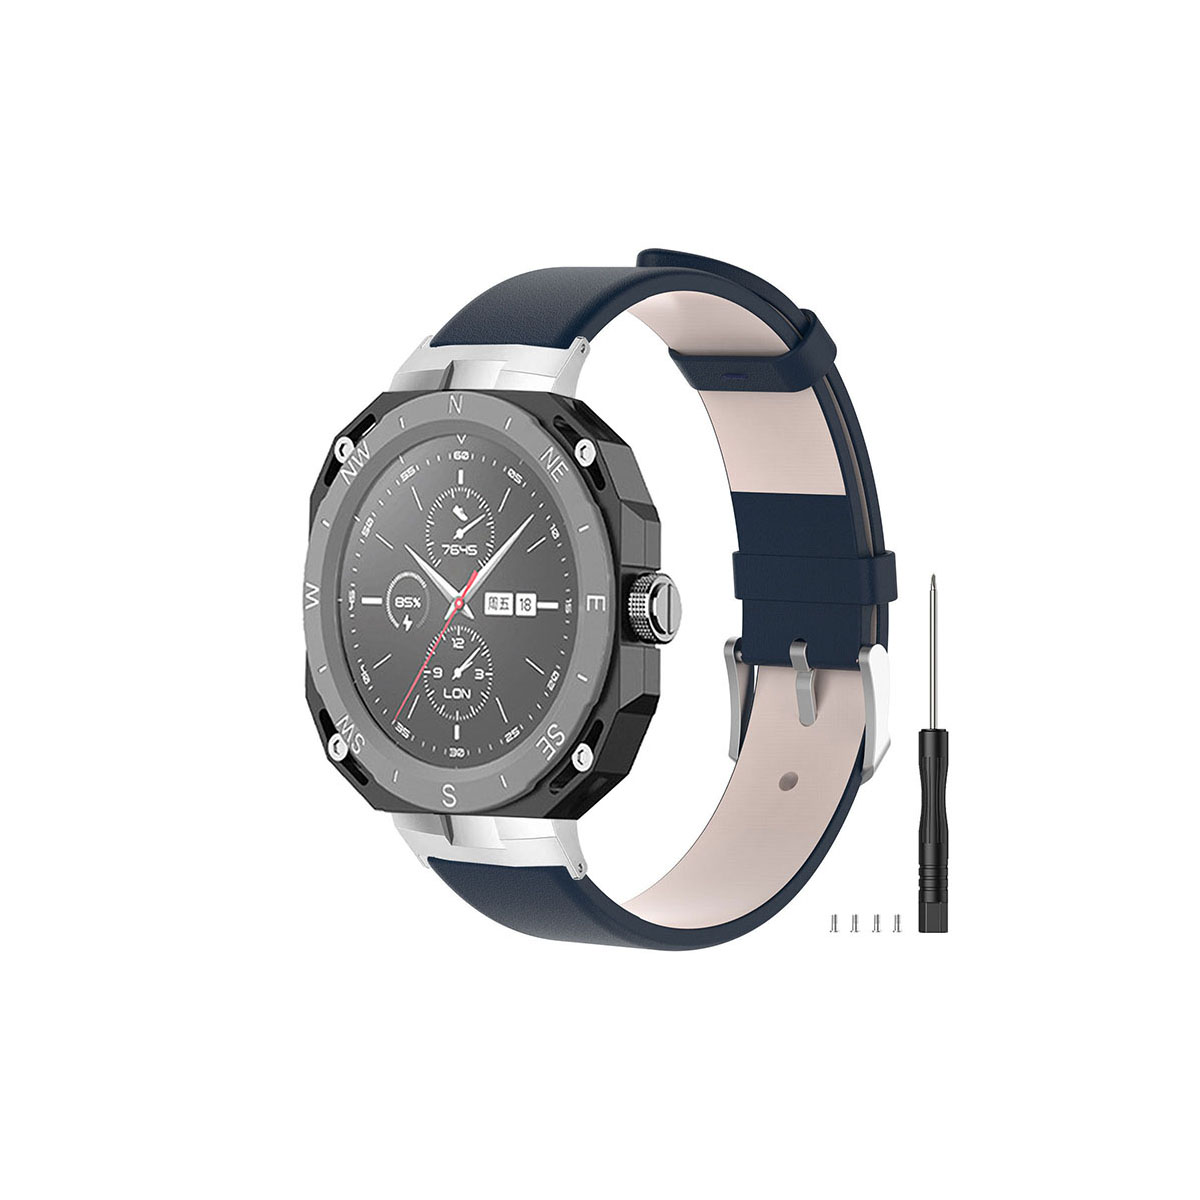 Huawei Watch GT Cyber 交換 バンド ウェアラブル端末・スマートウォッチ 腕時計ベルト スポーツ ベルト 交換用  替えベルトトレンド ベルト 腕時計バンド